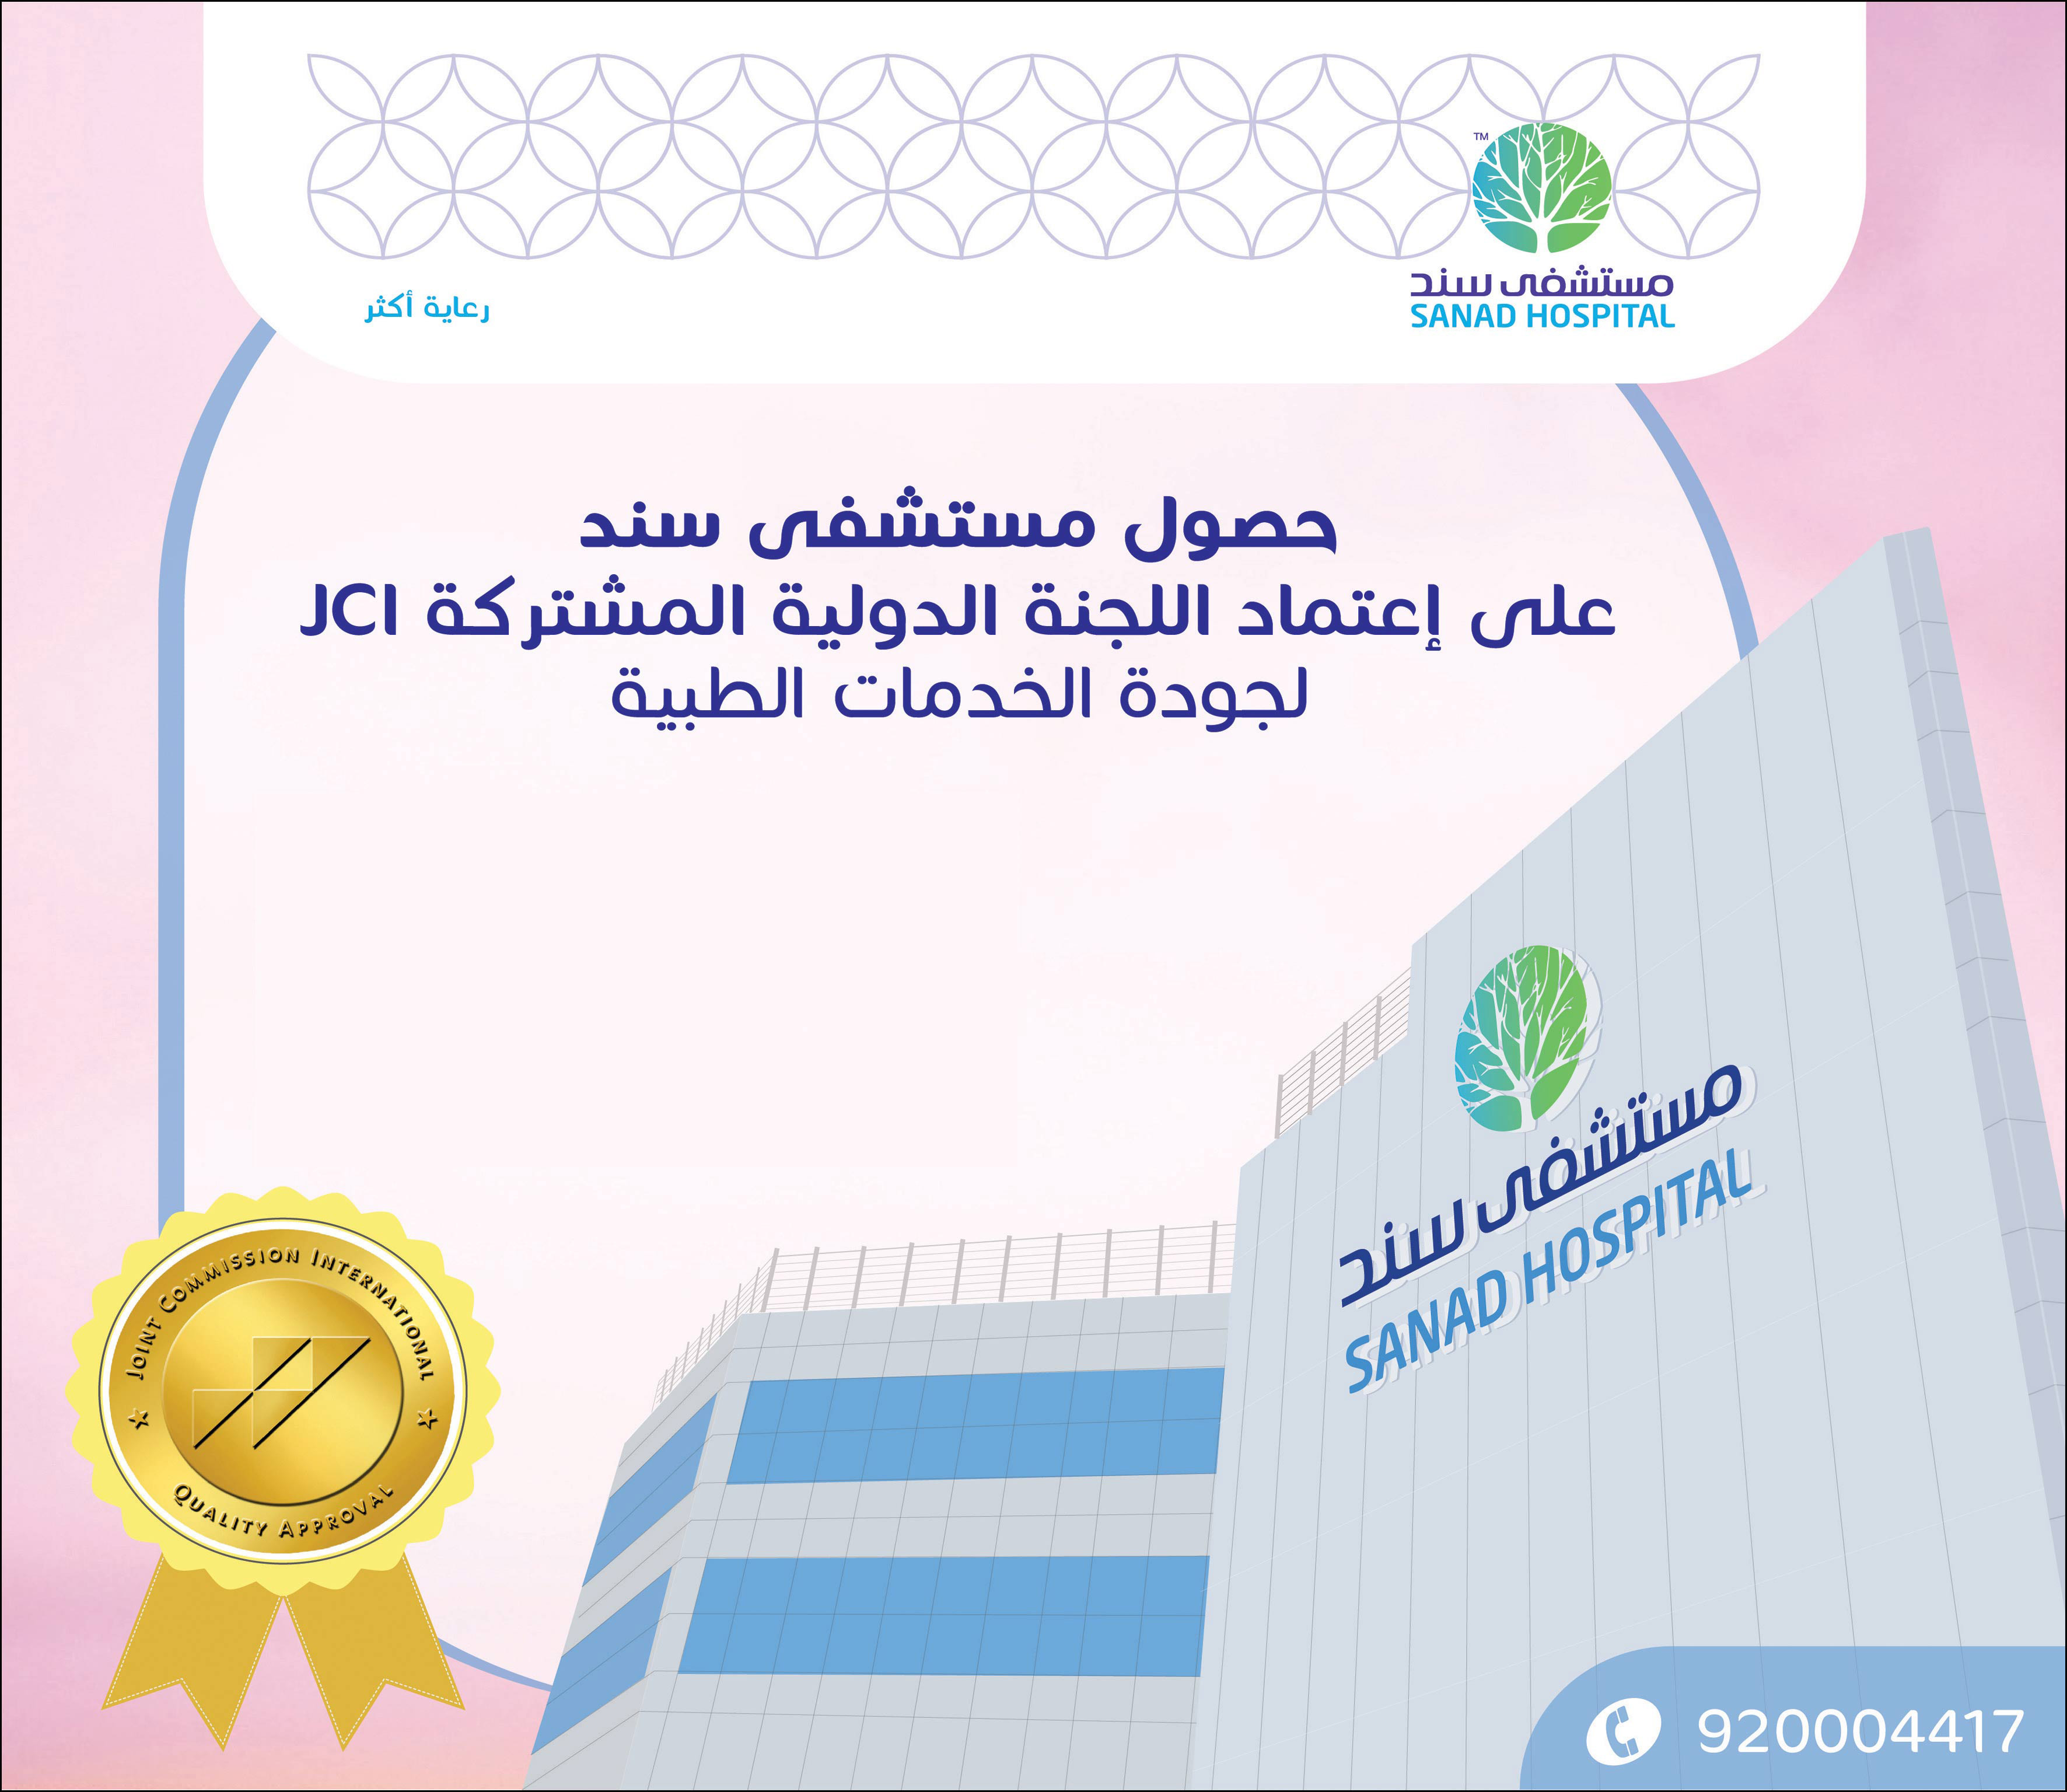 حصول مستشفى سند على إعتماد اللجنة الدولية المشتركة JCI لجودة الخدمات الطبية 